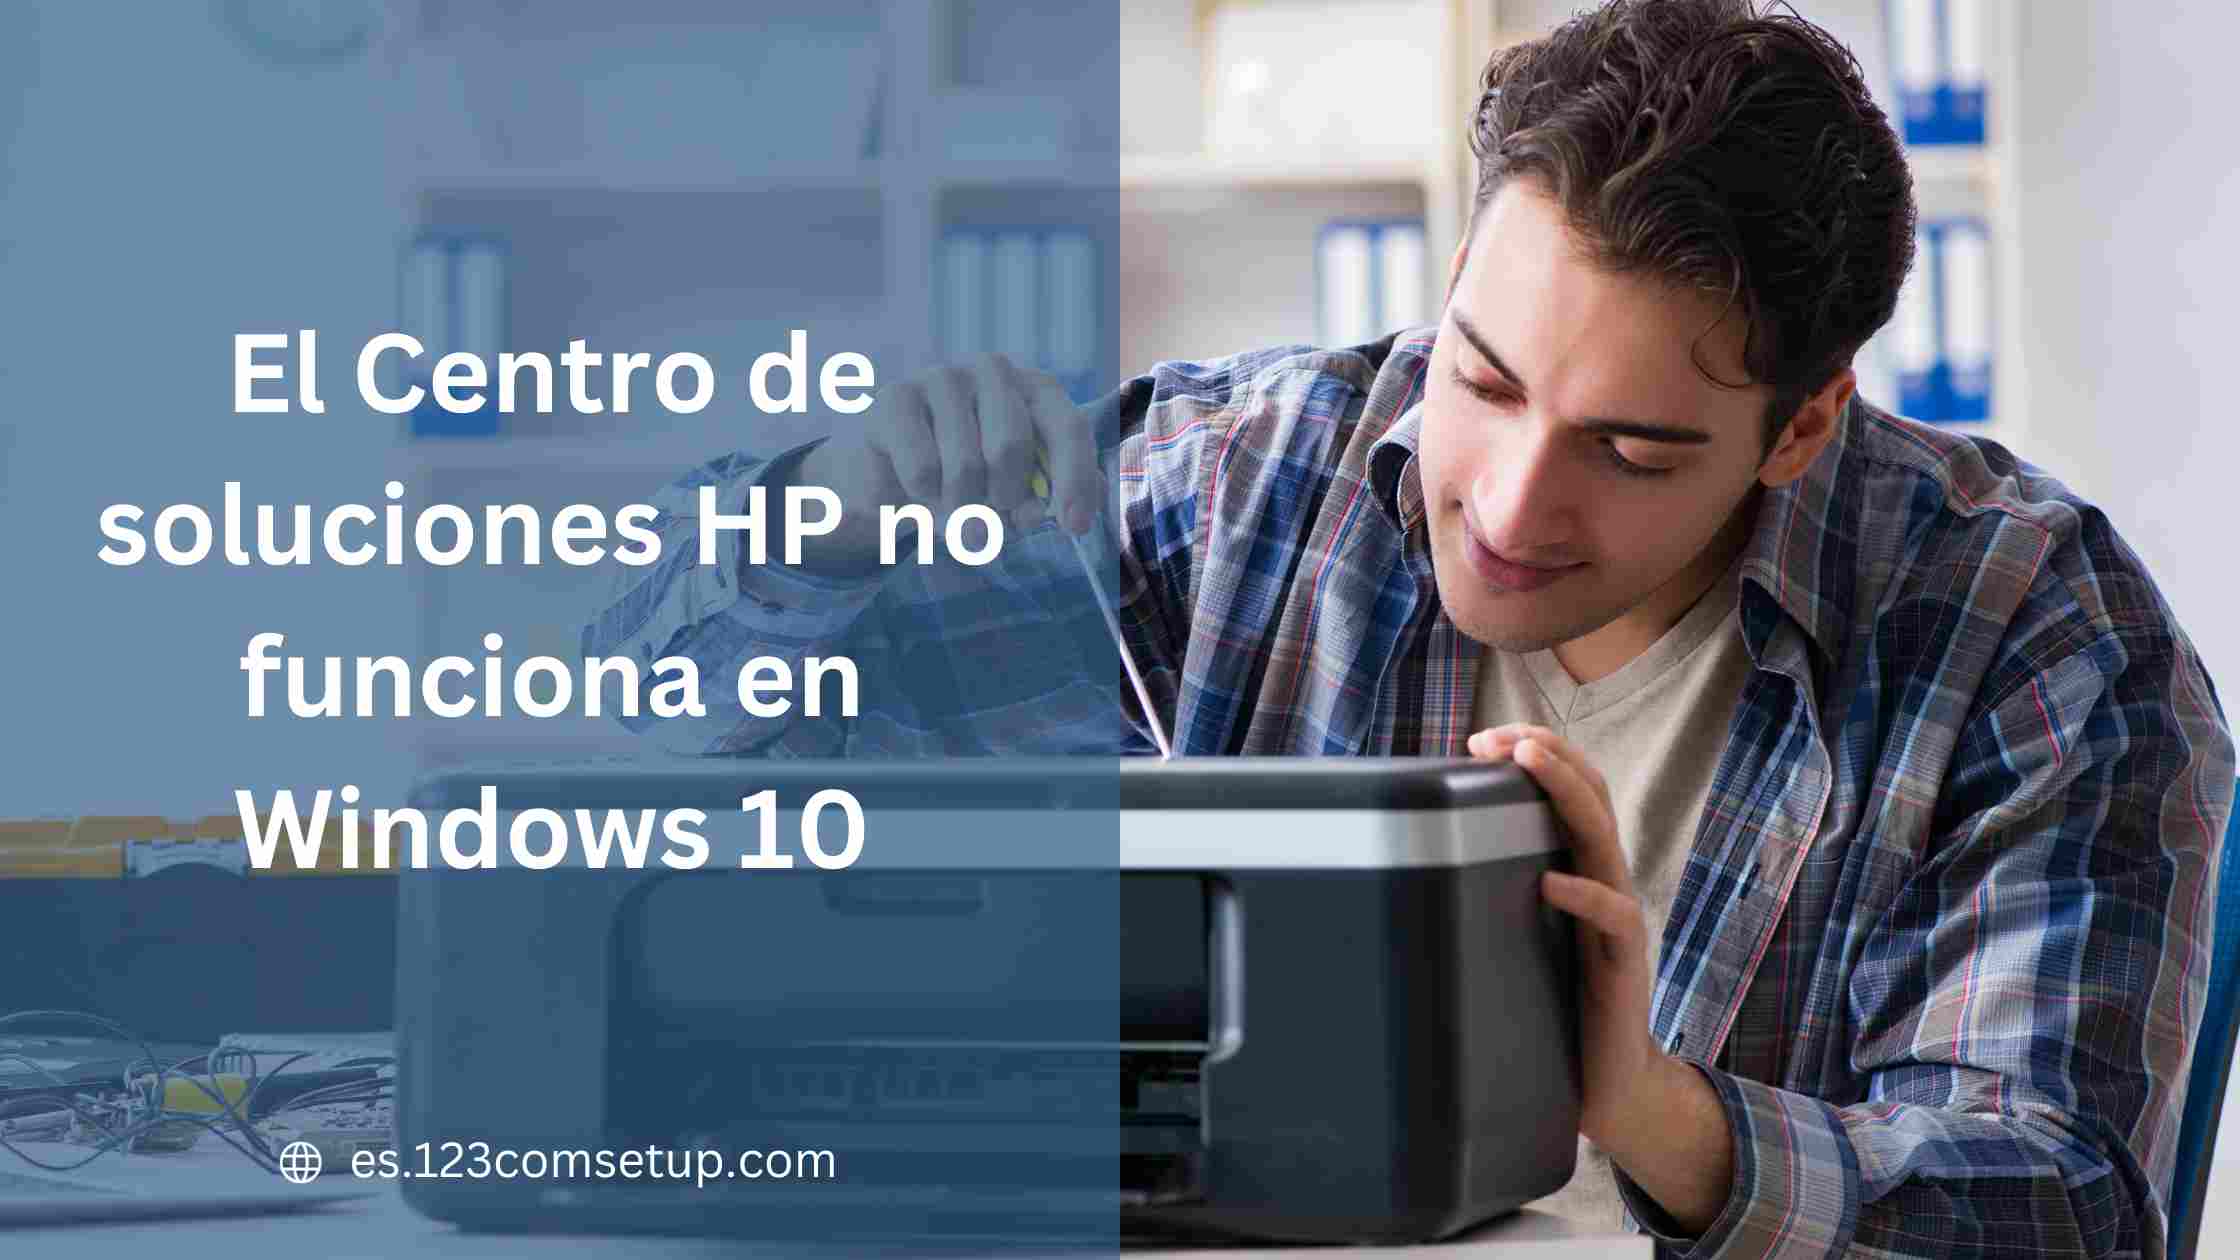 El Centro de soluciones HP no funciona en Windows 10